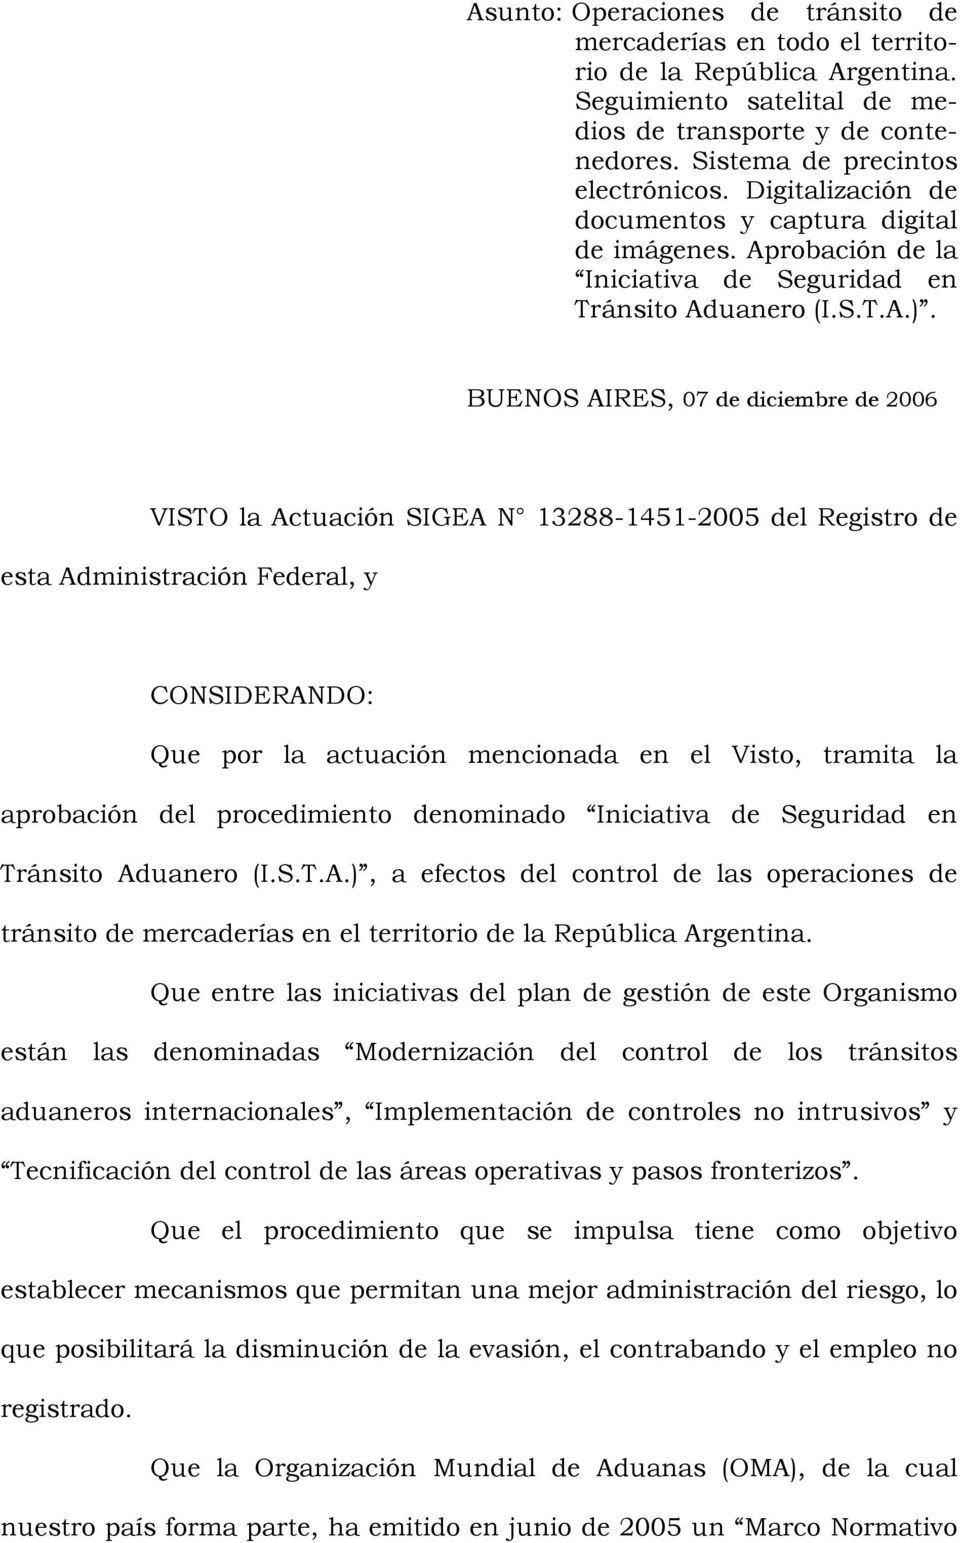 BUENOS AIRES, 07 de diciembre de 2006 VISTO la Actuación SIGEA N 13288-1451-2005 del Registro de esta Administración Federal, y CONSIDERANDO: Que por la actuación mencionada en el Visto, tramita la